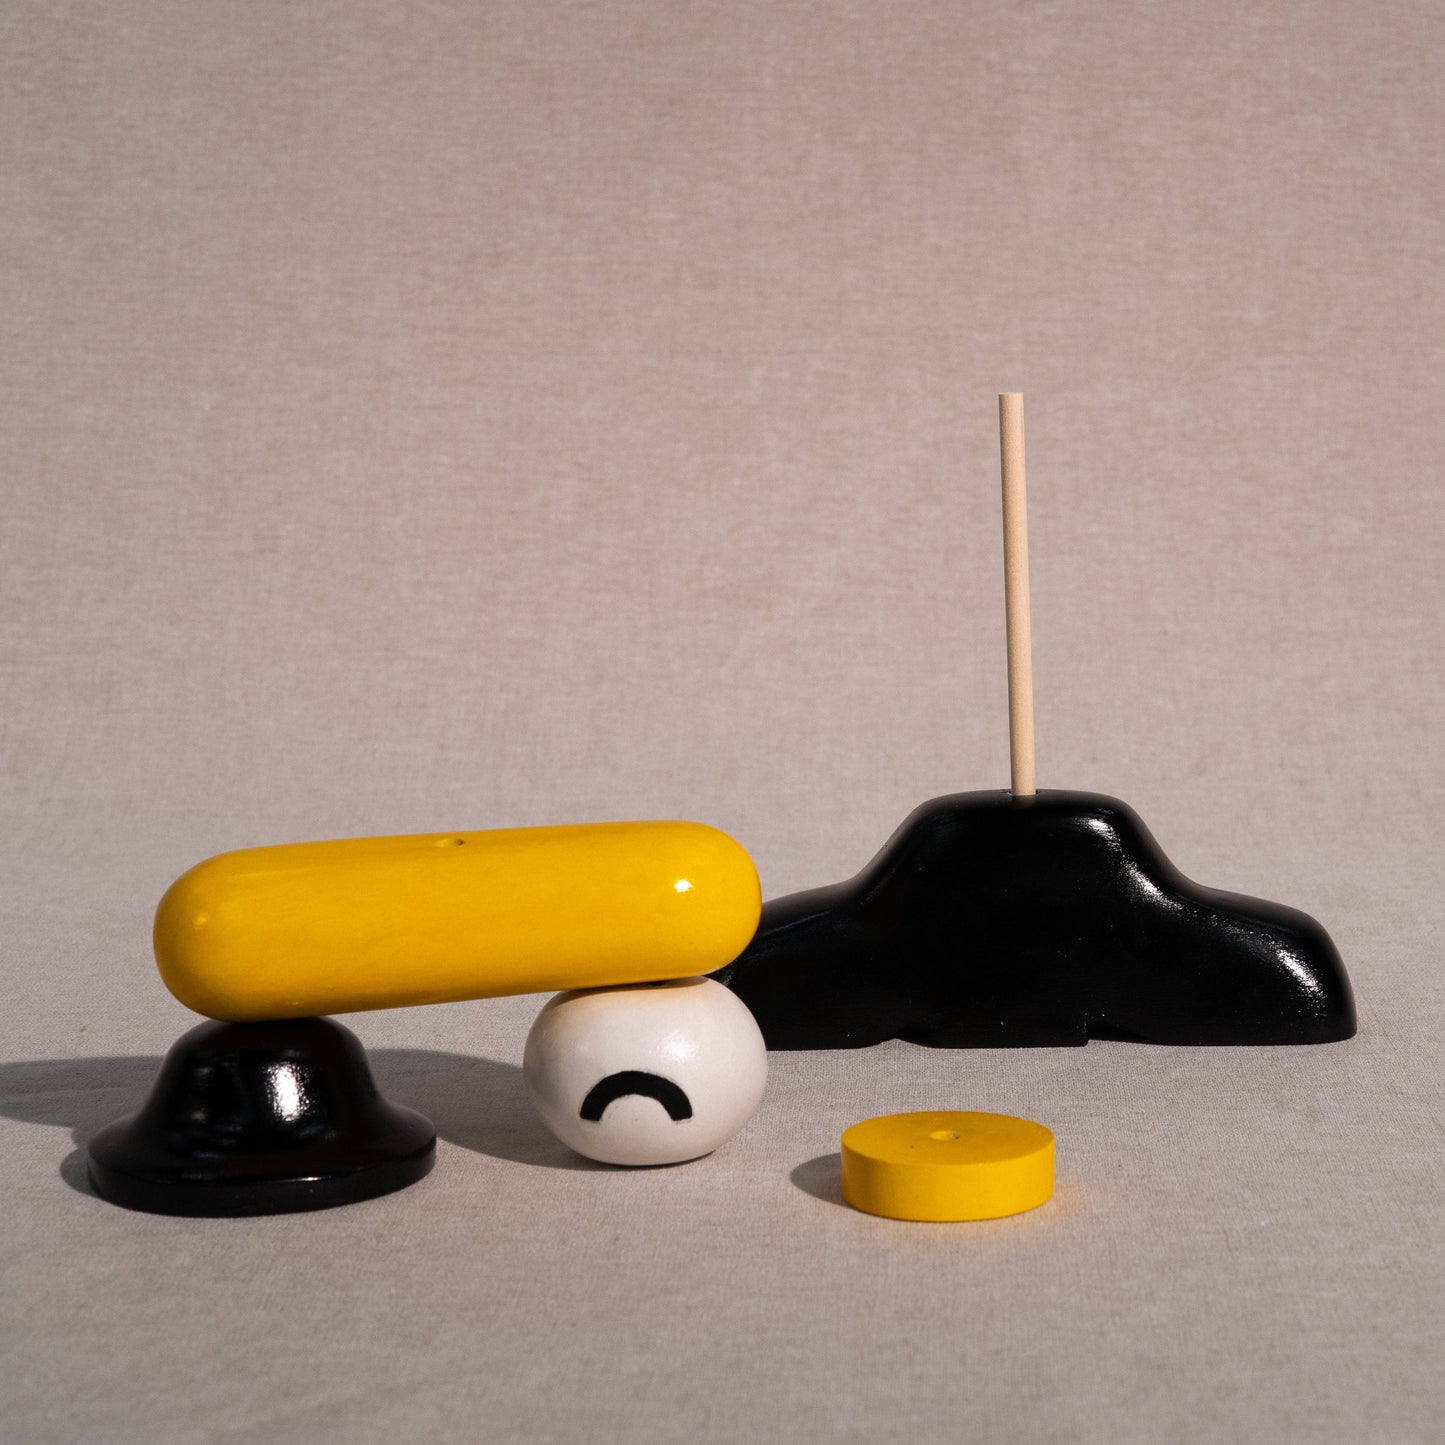 Artisan Series: "Fumbling Emotions" (Yellow) by Johan Eriksson